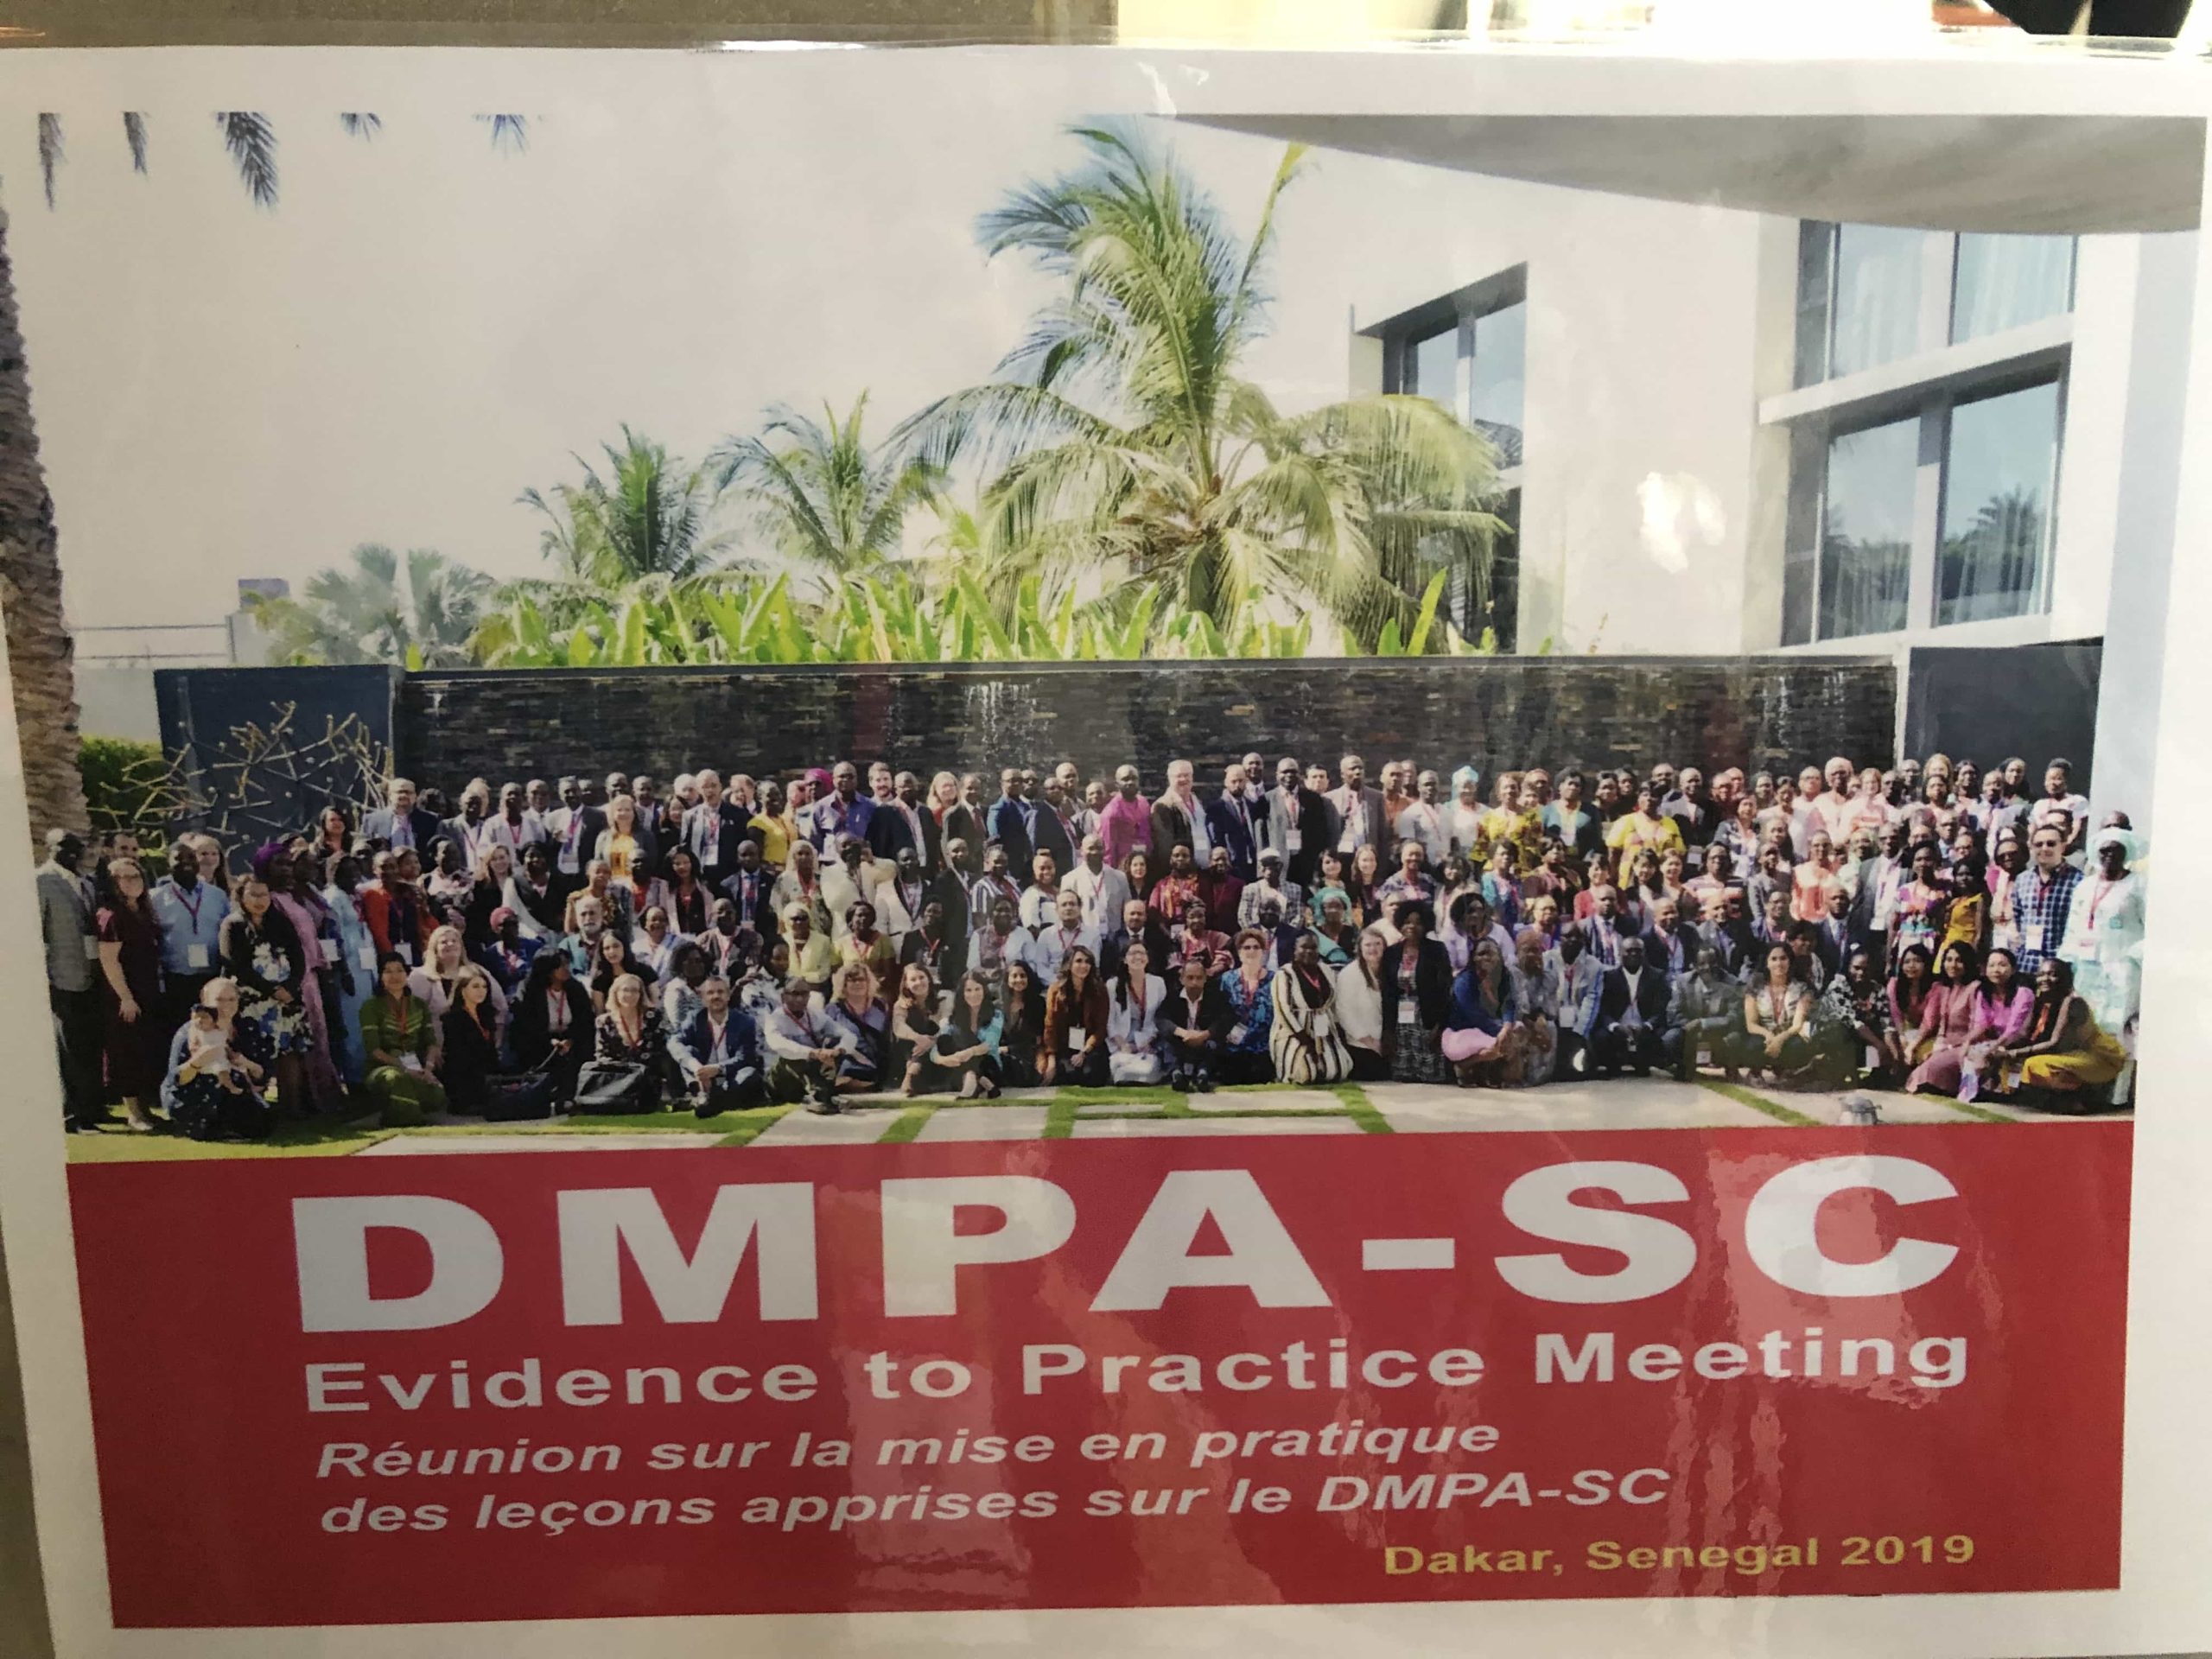 Les participants se réunissent pour la réunion DMPA-SC Evidence to Practice à Dakar, Sénégal en 2019. Crédit d'image: Catherine Packer